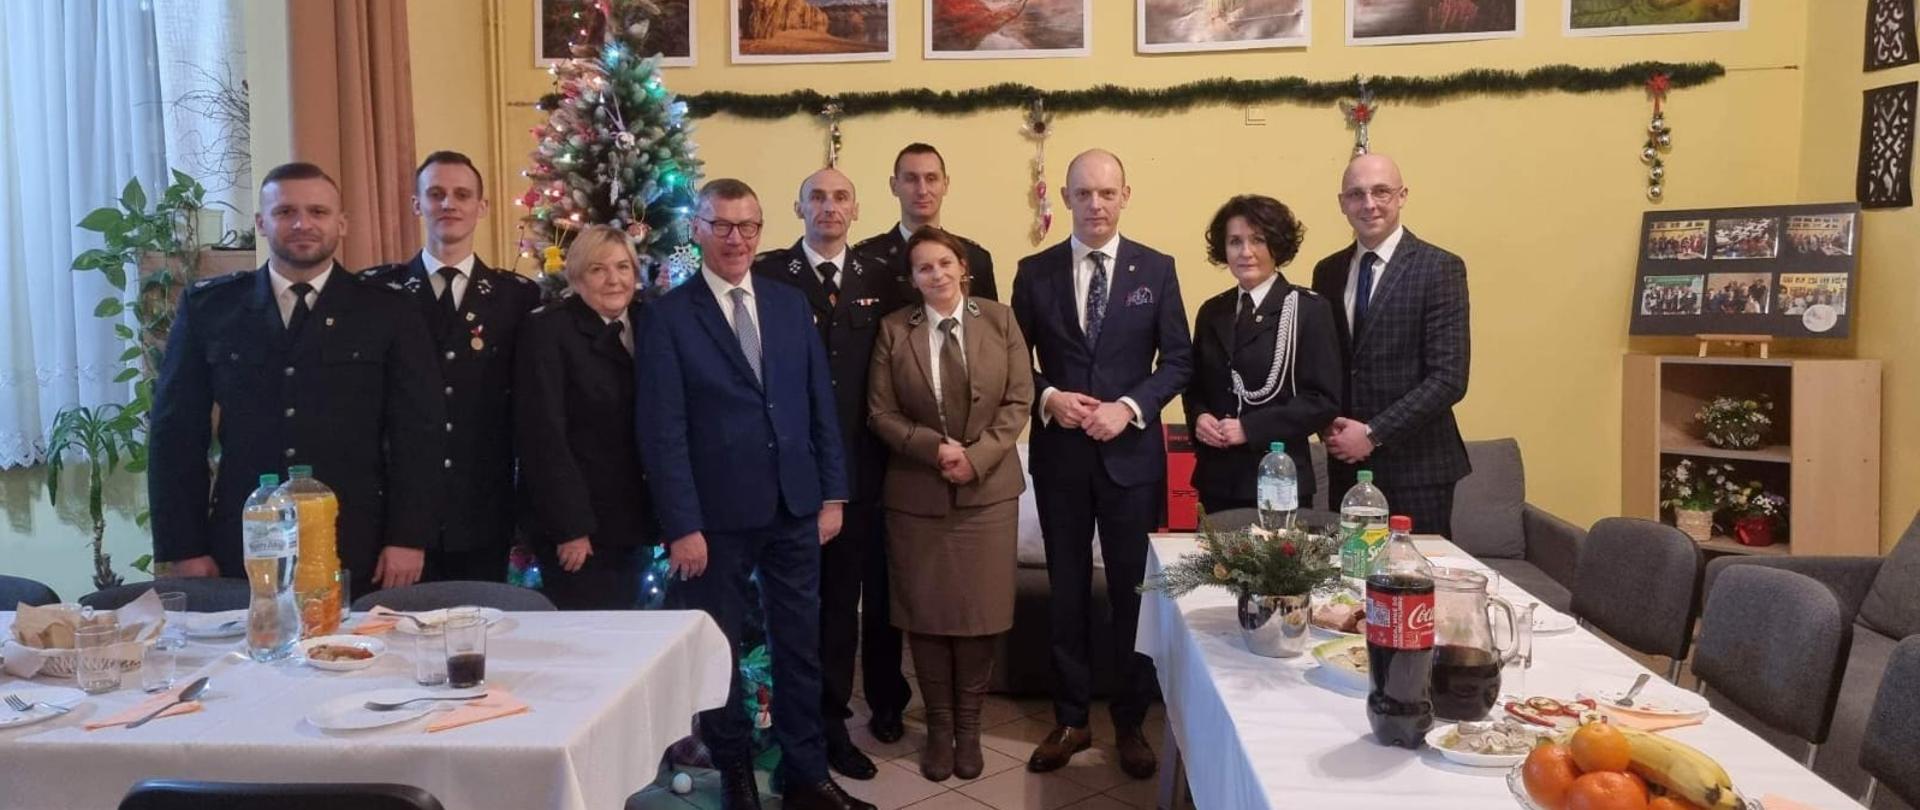 Zdjęcie przedstawia zaproszonych na spotkanie wigilijno-noworoczne gości wraz z gospodarzami.